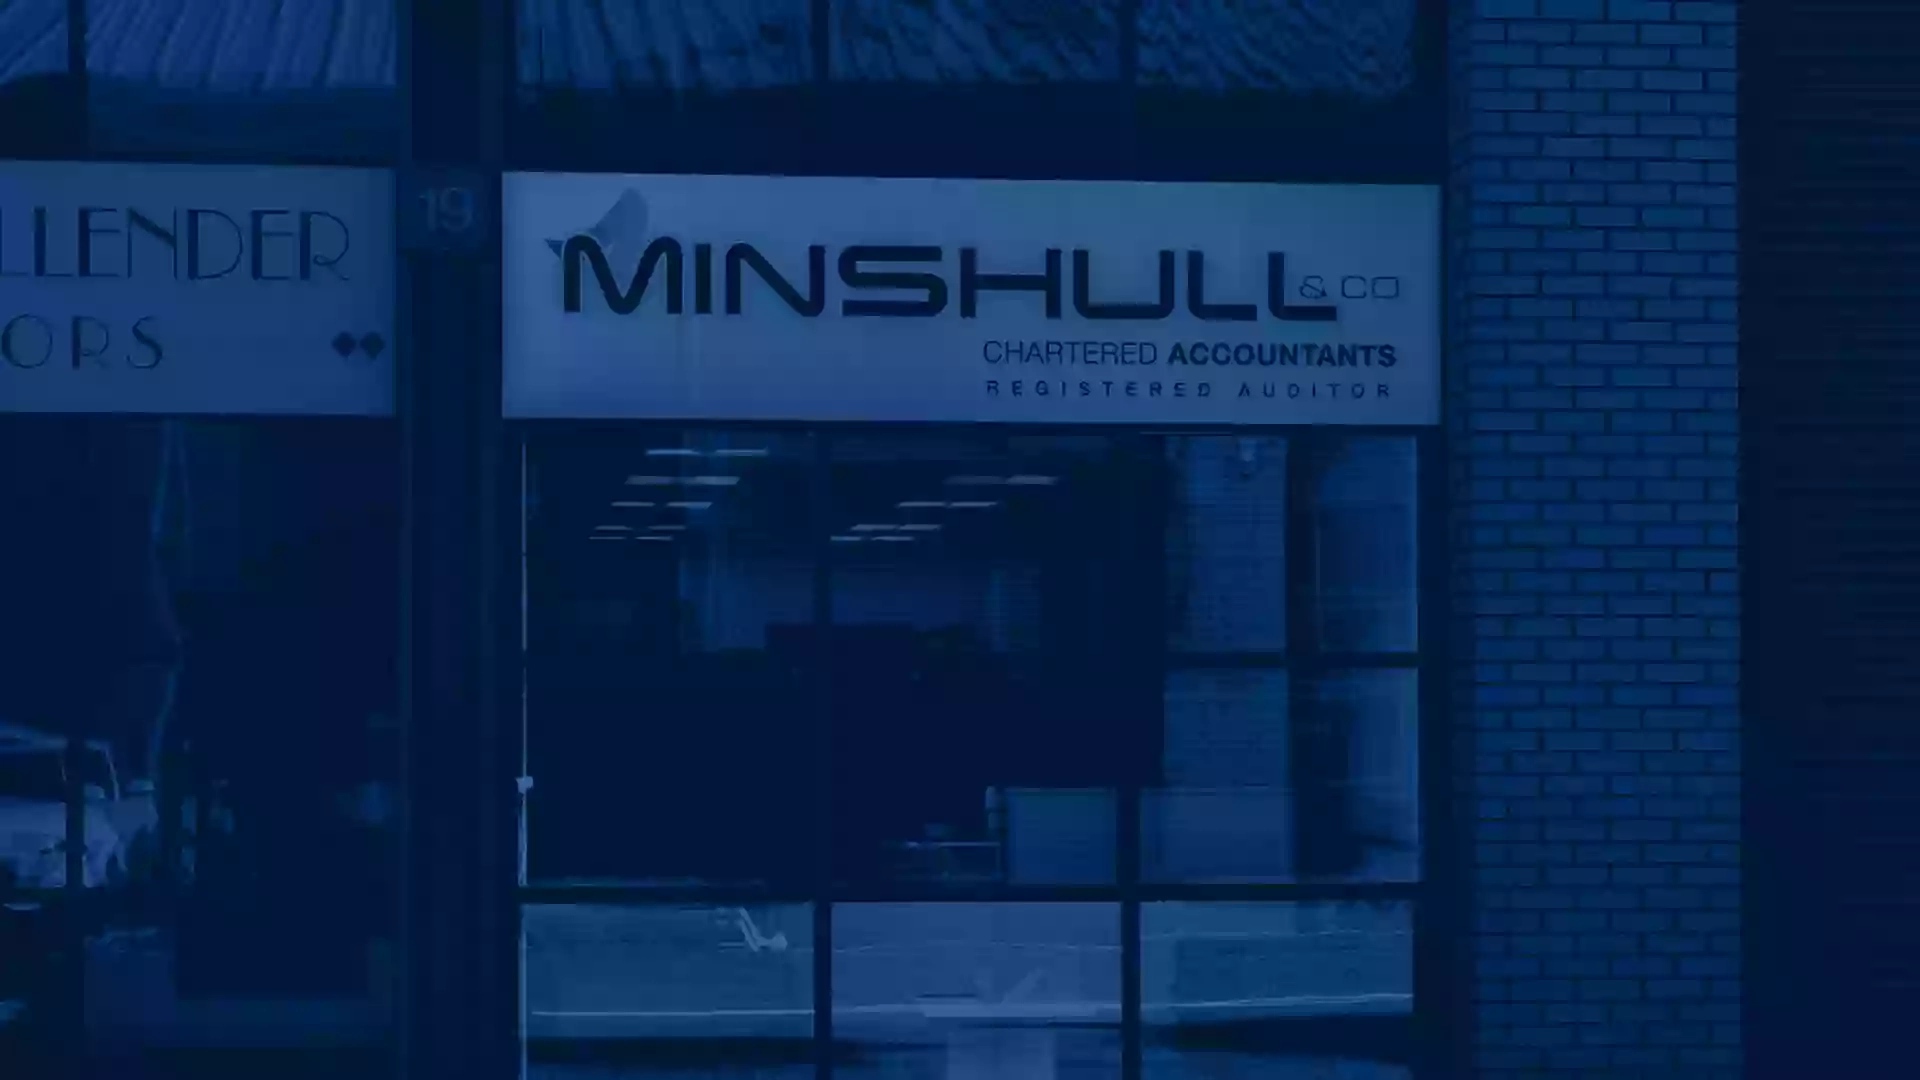 Minshull & Co